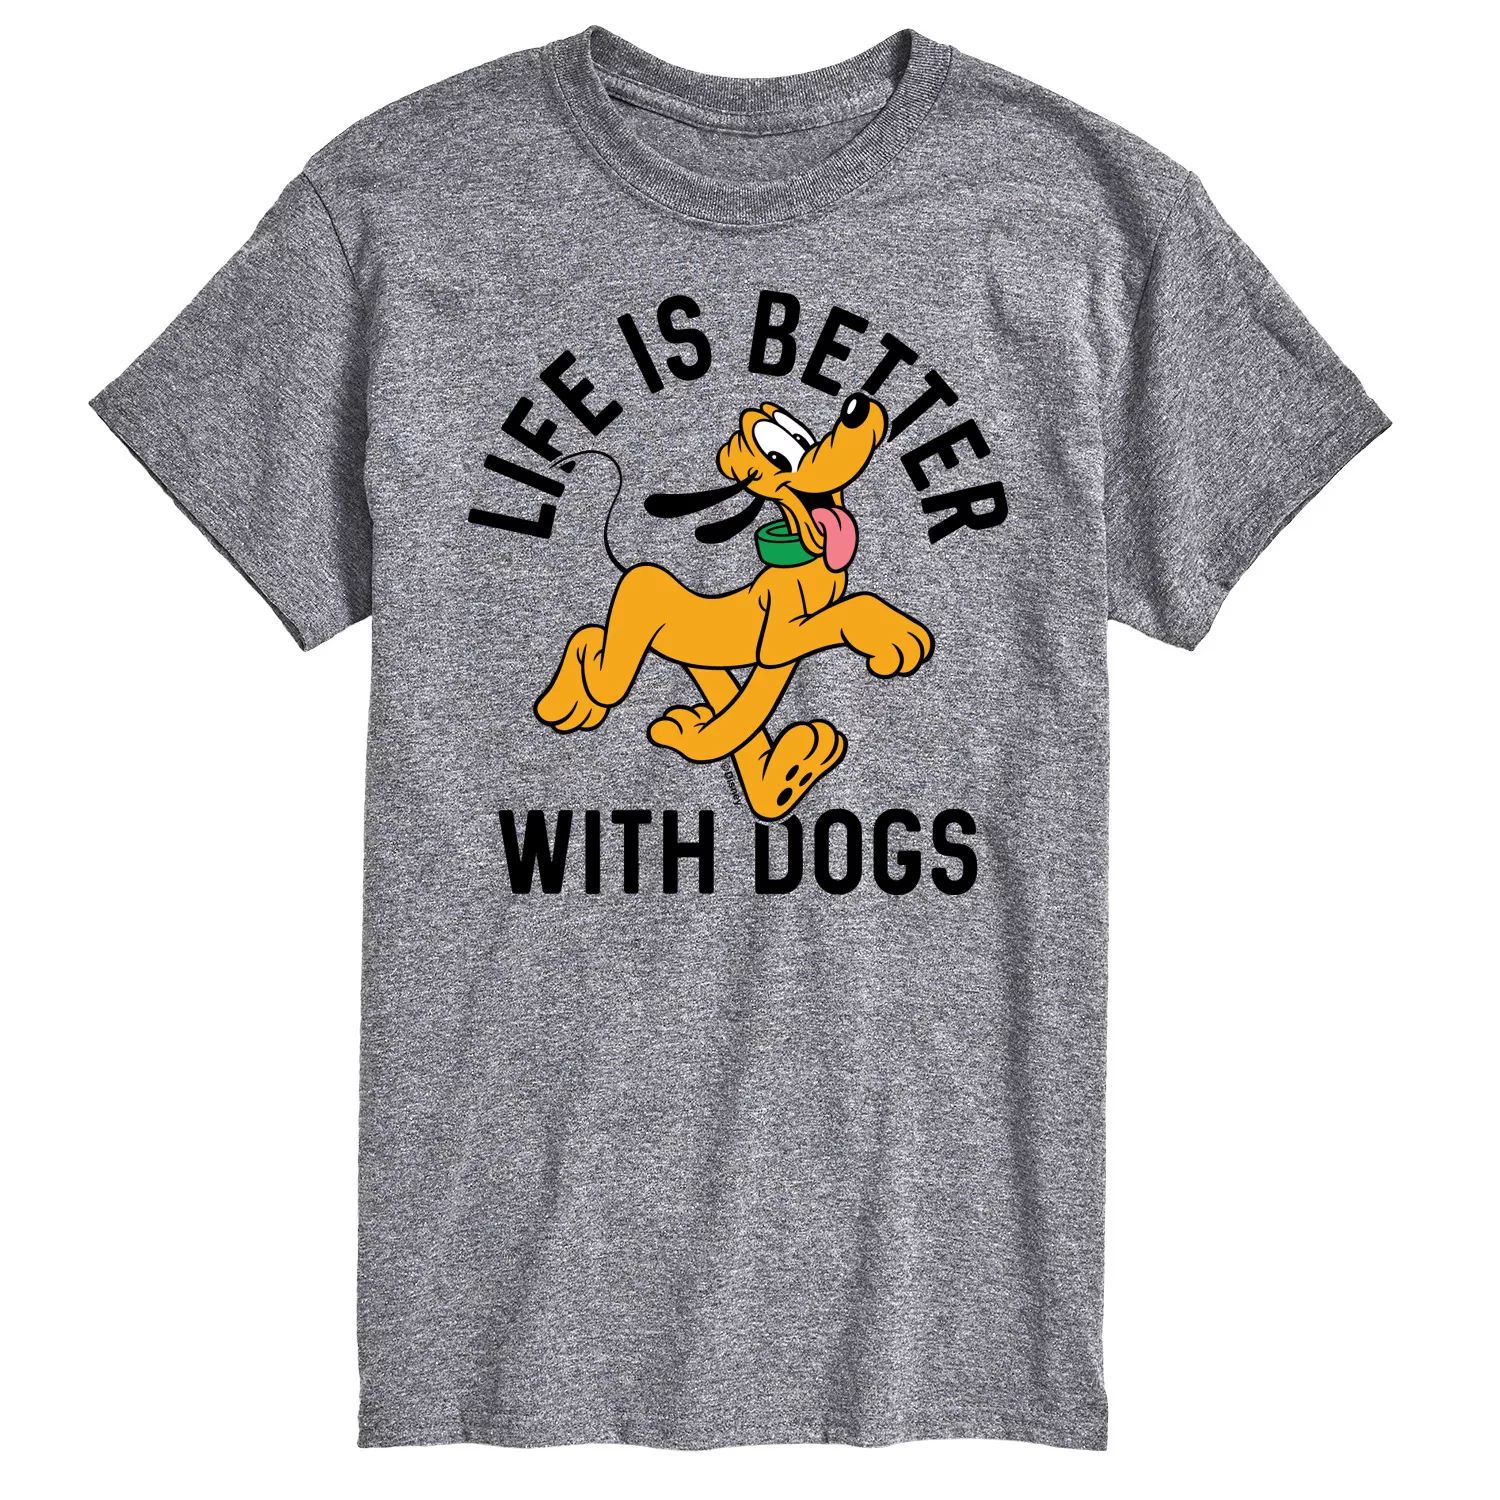 Мужская футболка Disney с рисунком собак «Жизнь лучше с собаками» Licensed Character printio футболка для собак с собакой жизнь лучше